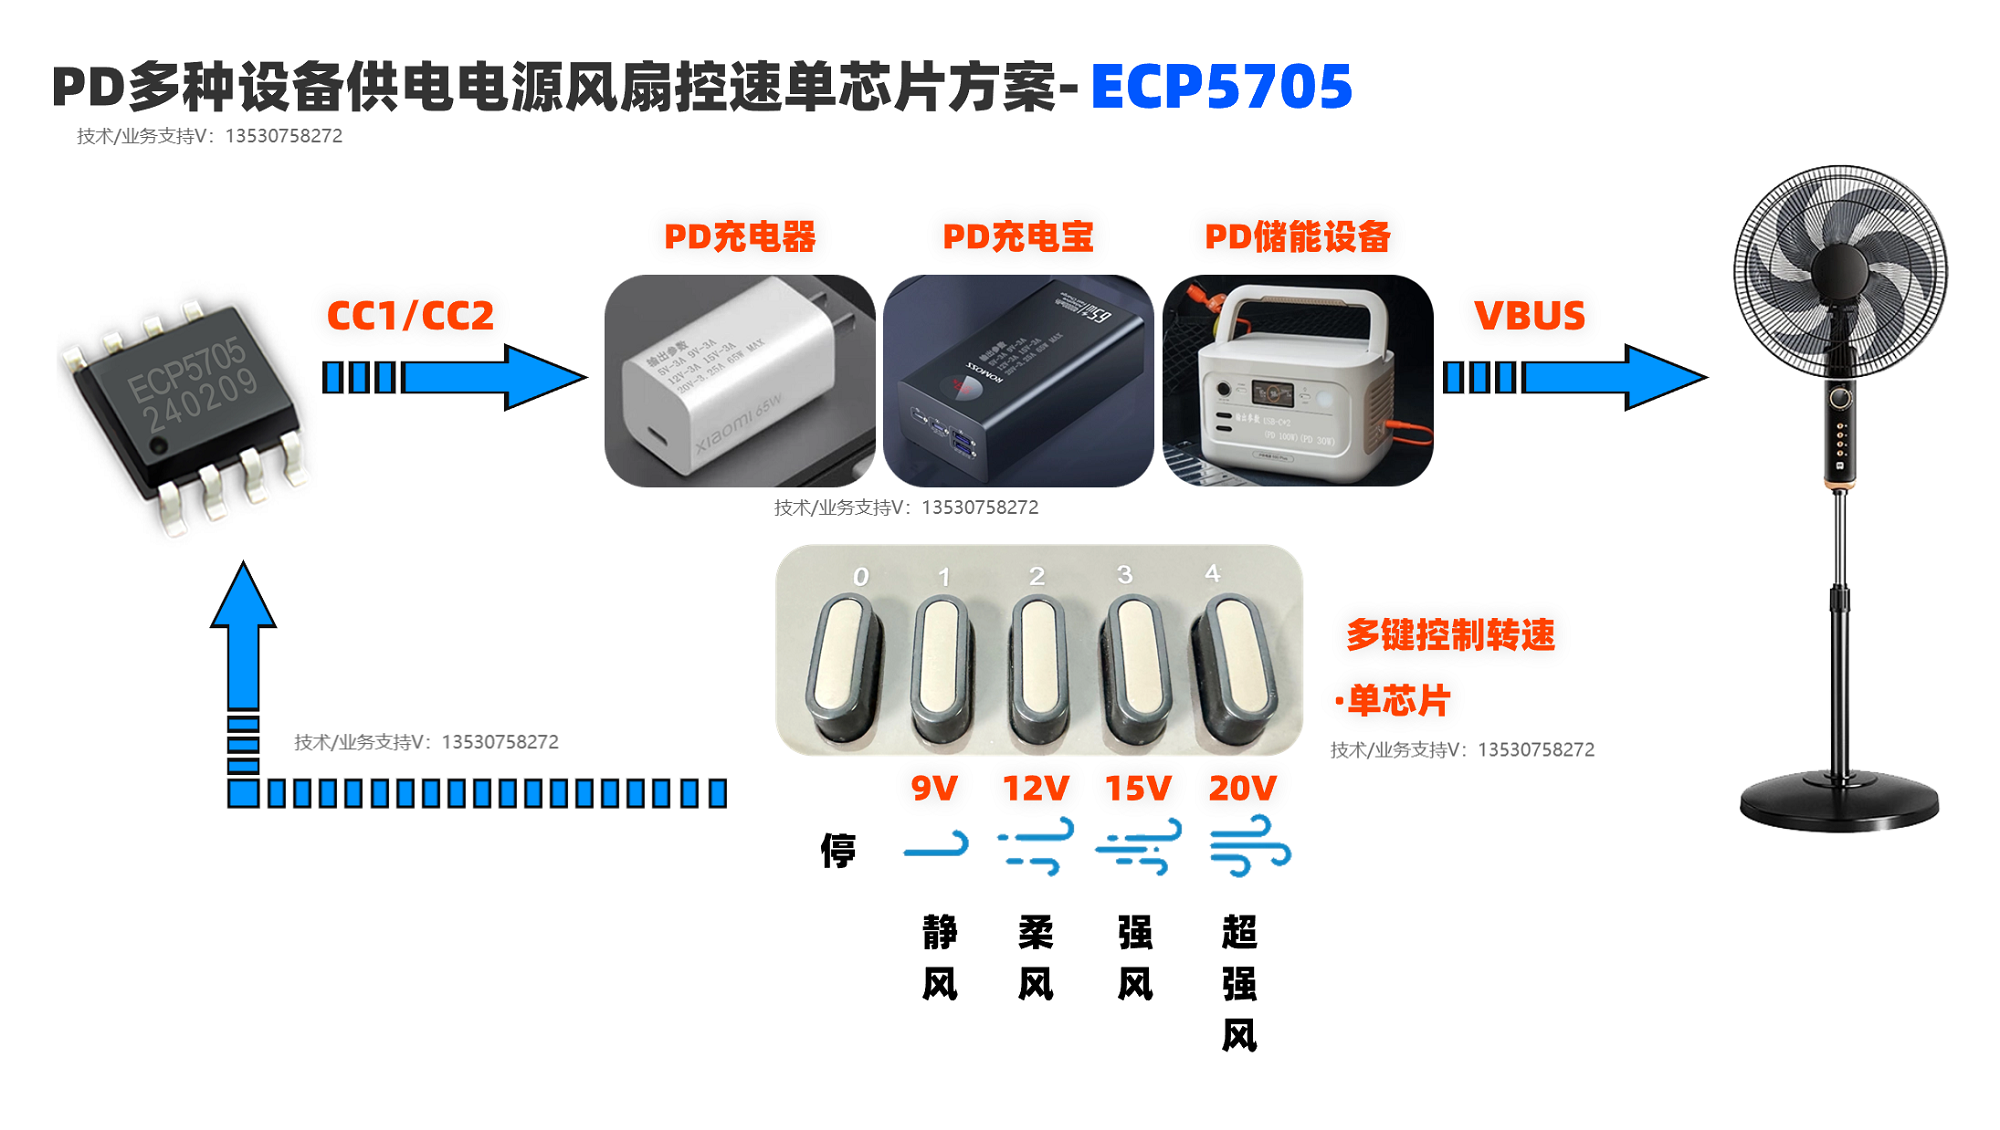 能芯PD协议取电芯片ECP5705——支持多协议、小体积、外围简单，支持5V、9V、12V、15V、20V电压输出